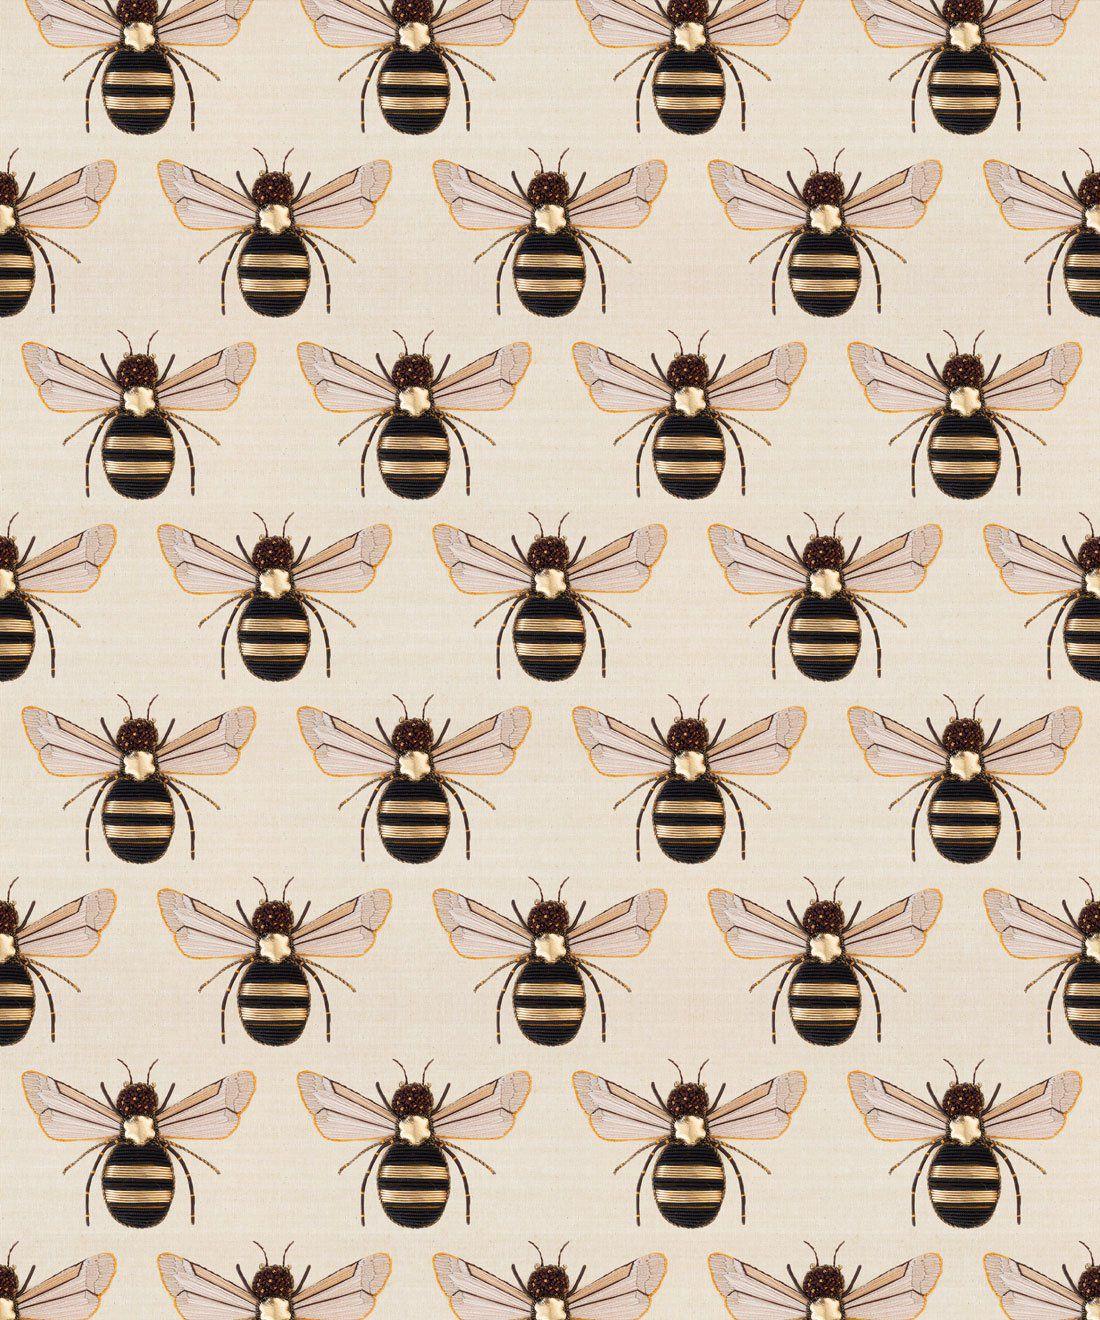 Bees, Butterflies, Moths & Caterpillar Wallpaper